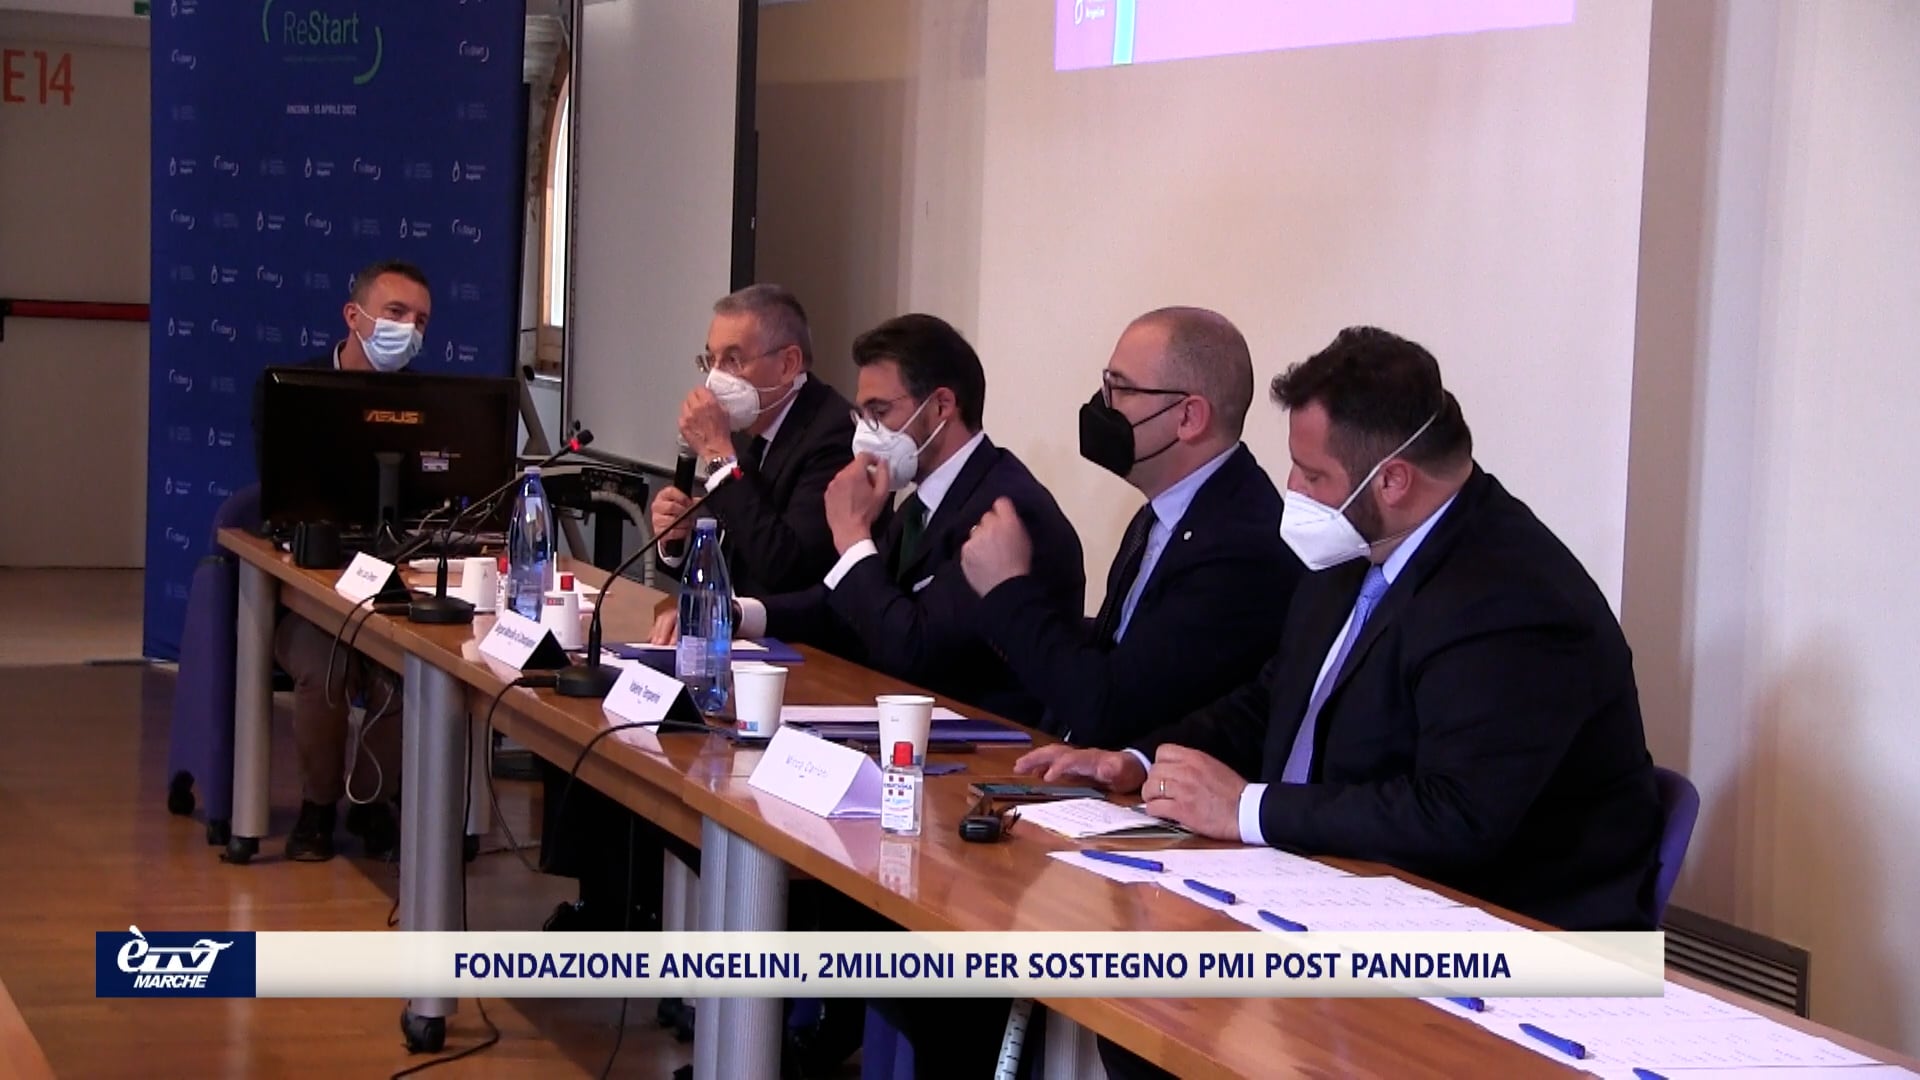 Fondazione Angelini, 2 milioni per sostegno PMI post pandemia